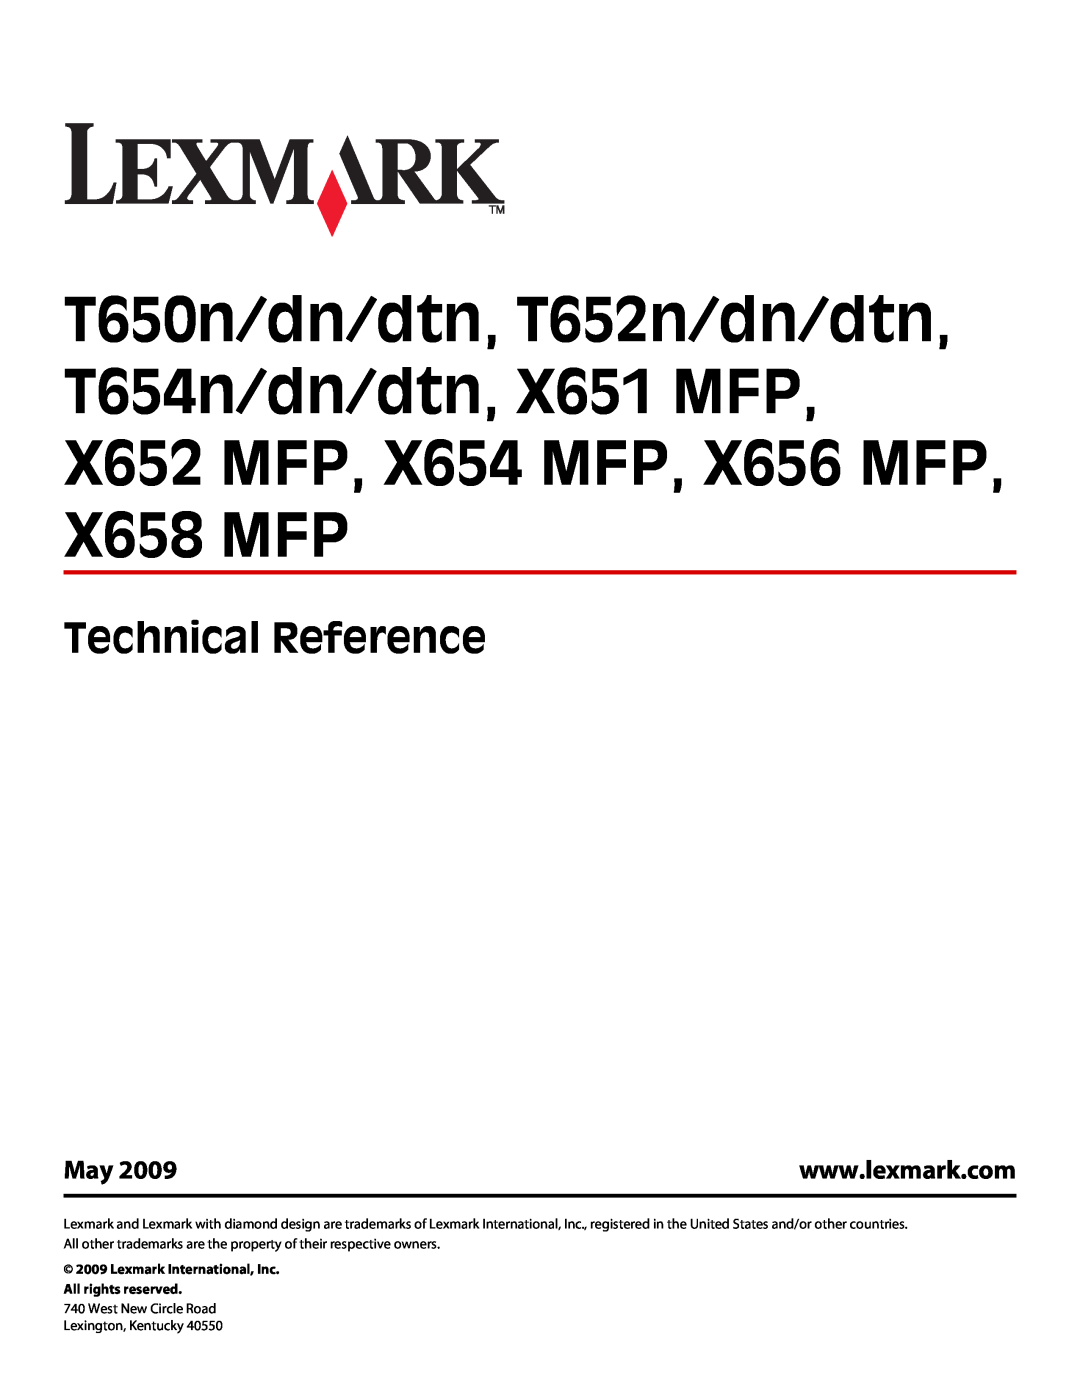 Lexmark X654 MFP, X652 MFP, X658 MFP, X656 MFP manual Technical Reference, T650n/dn/dtn, T652n/dn/dtn T654n/dn/dtn, X651 MFP 